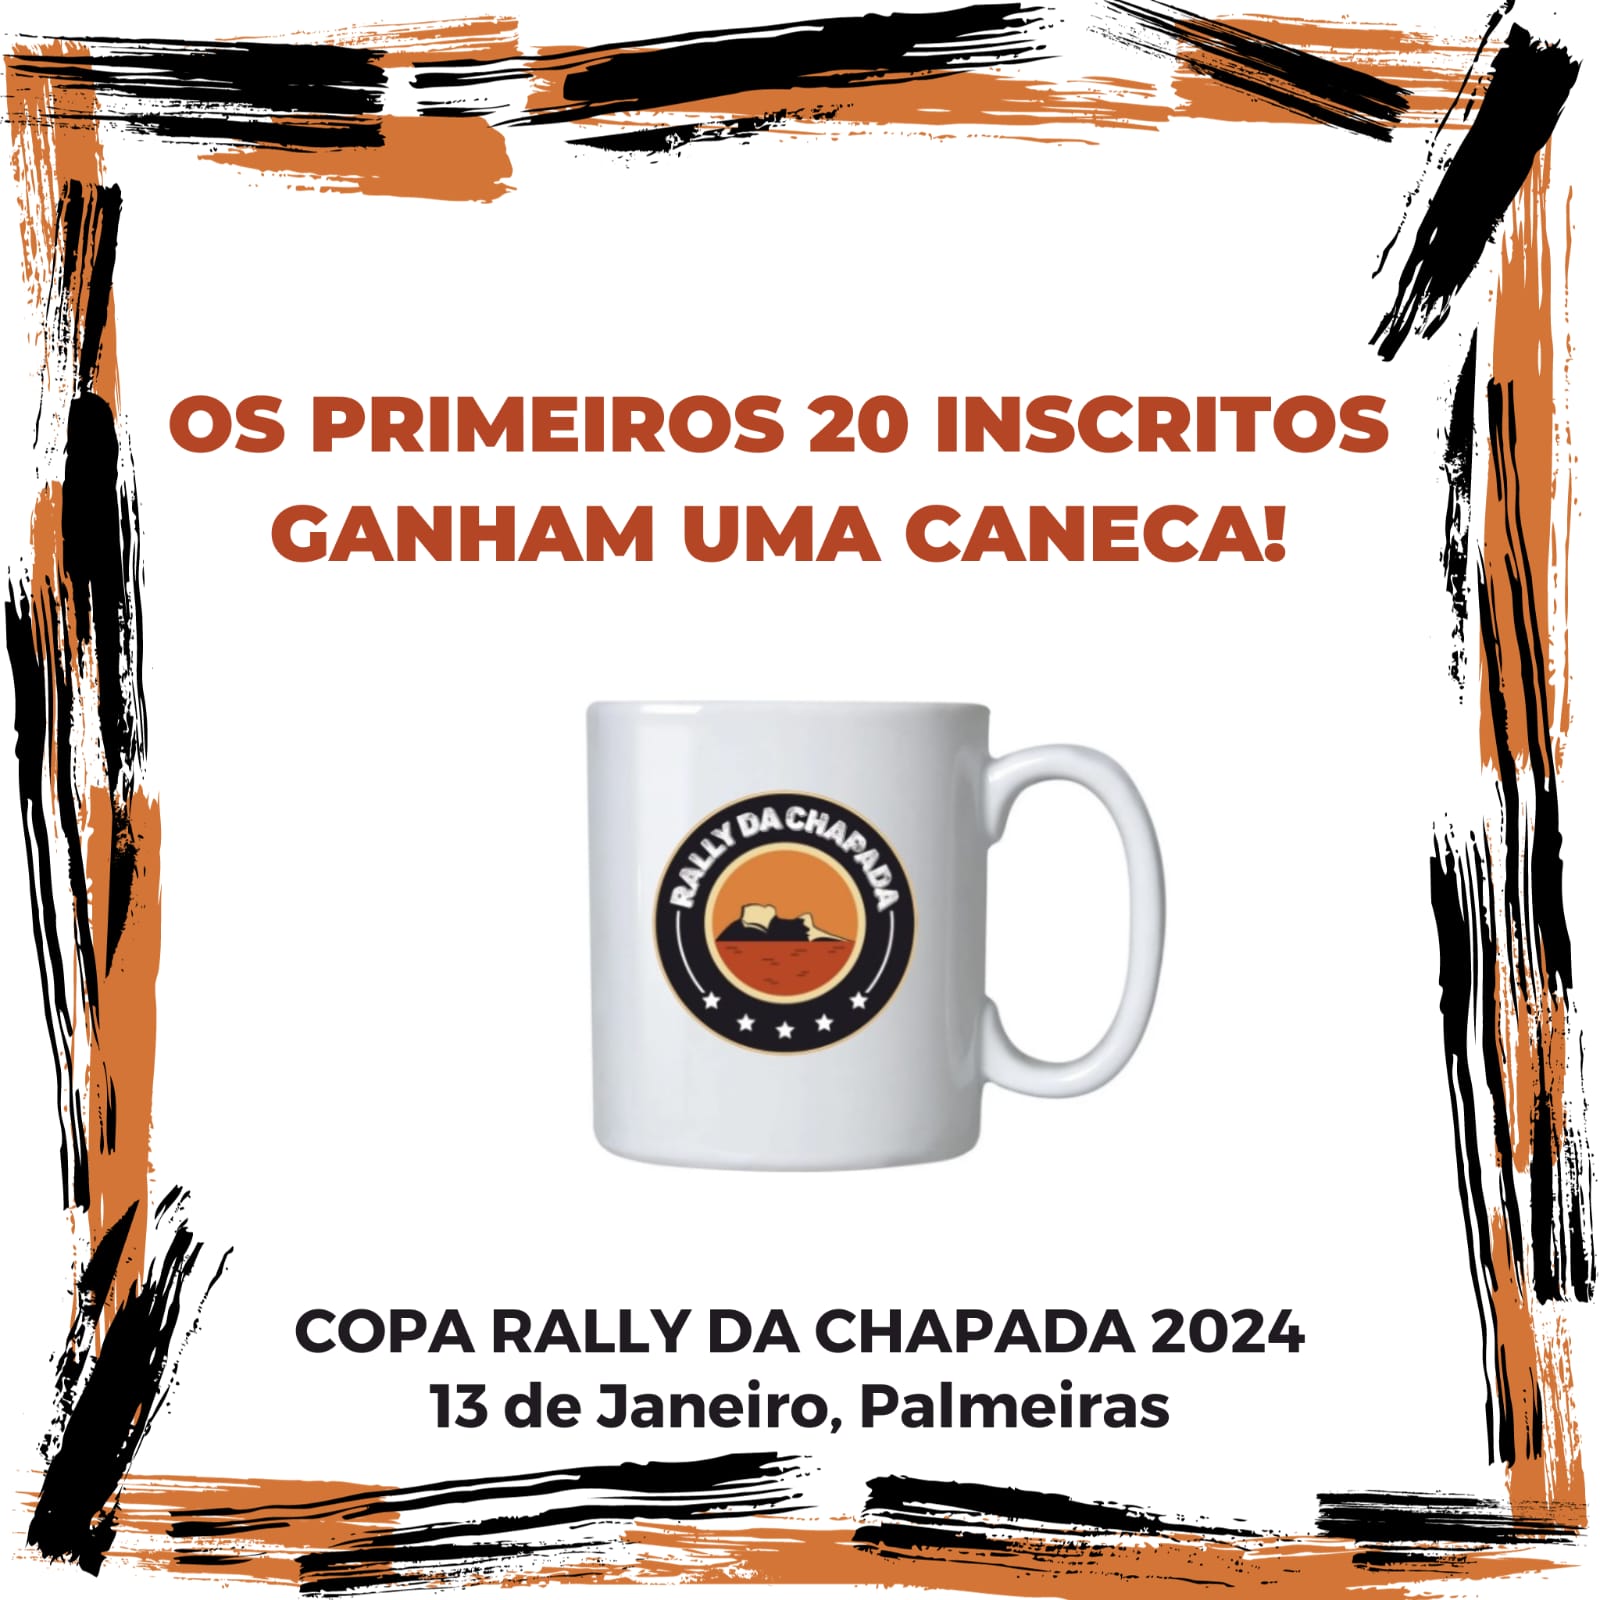 Caneca Rally da Chapada será brinde para os 20 primeiros inscritos